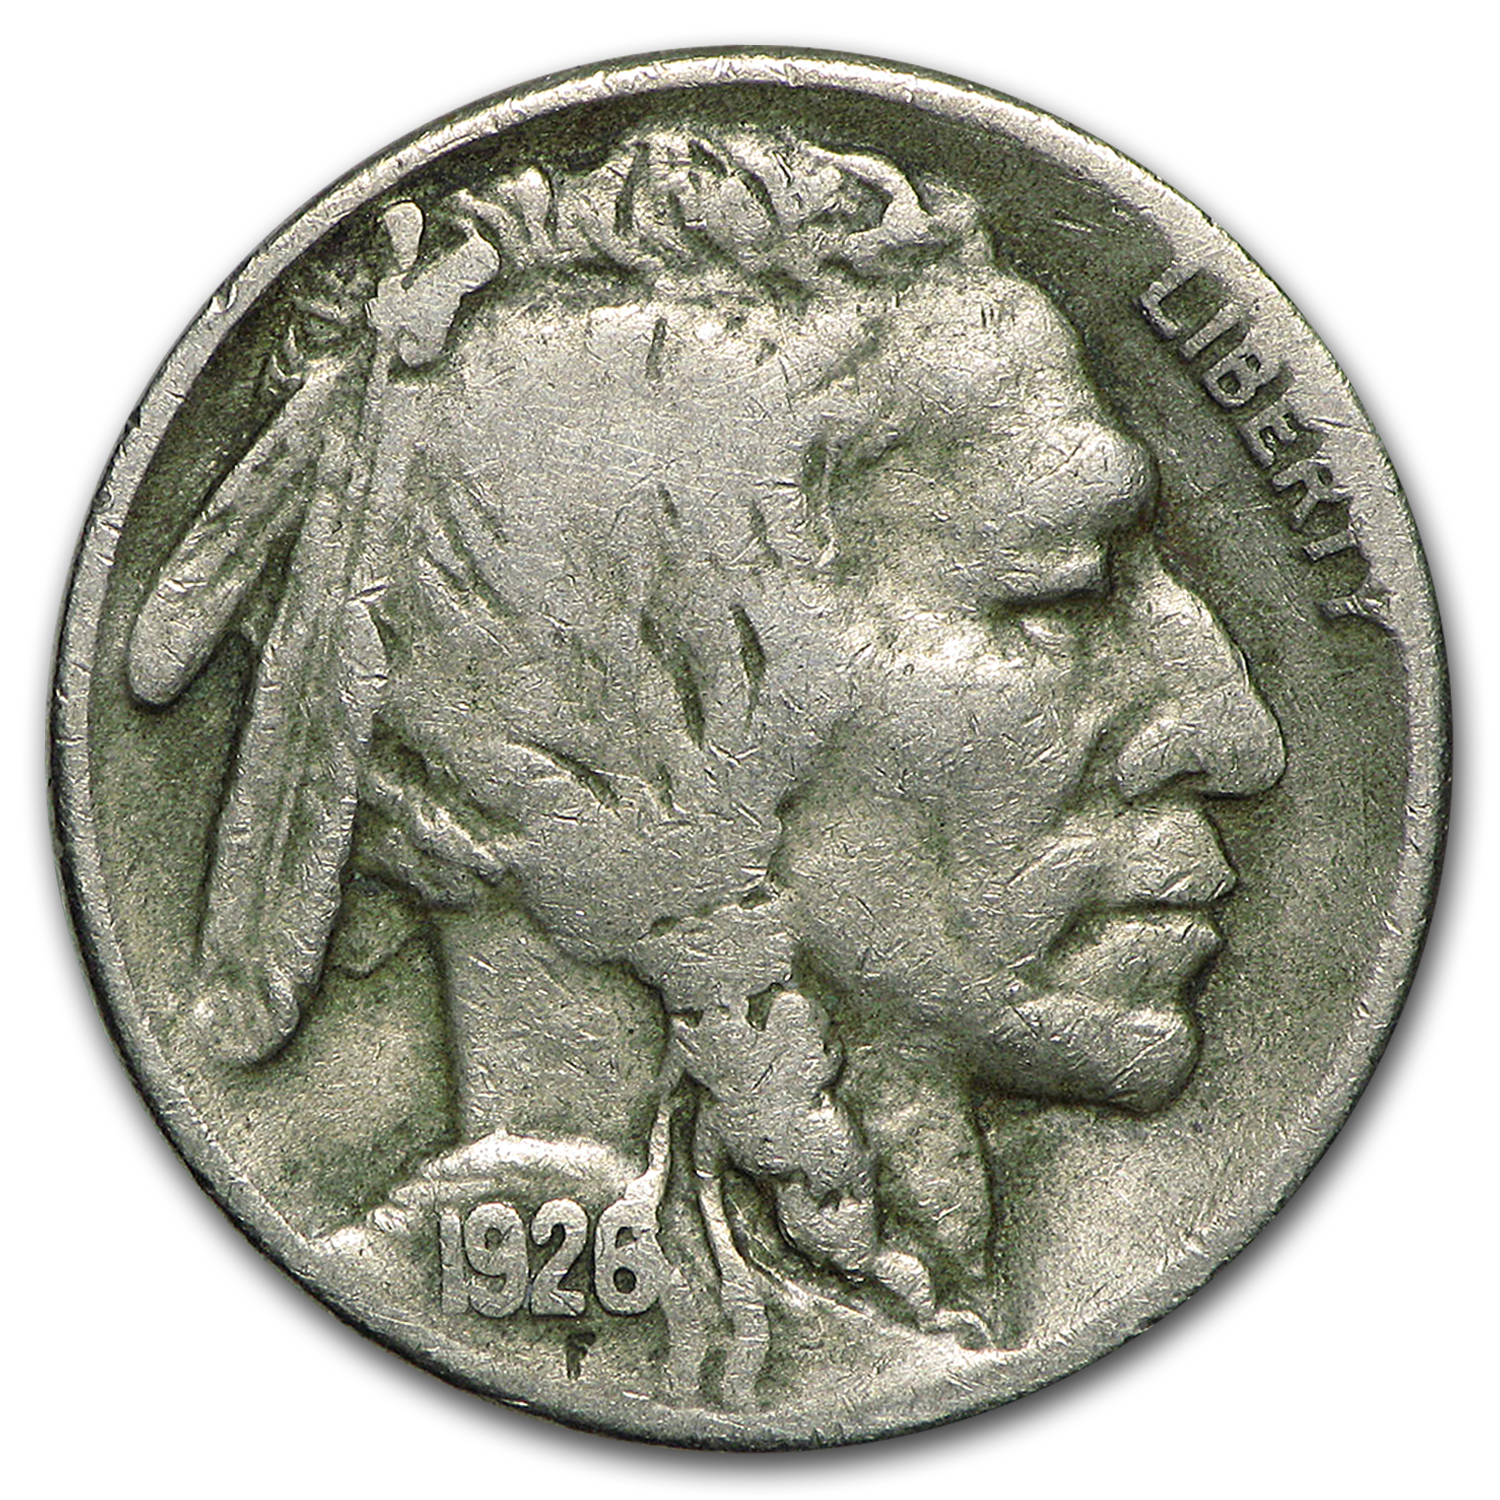 Buy 1926-S Buffalo Nickel VF